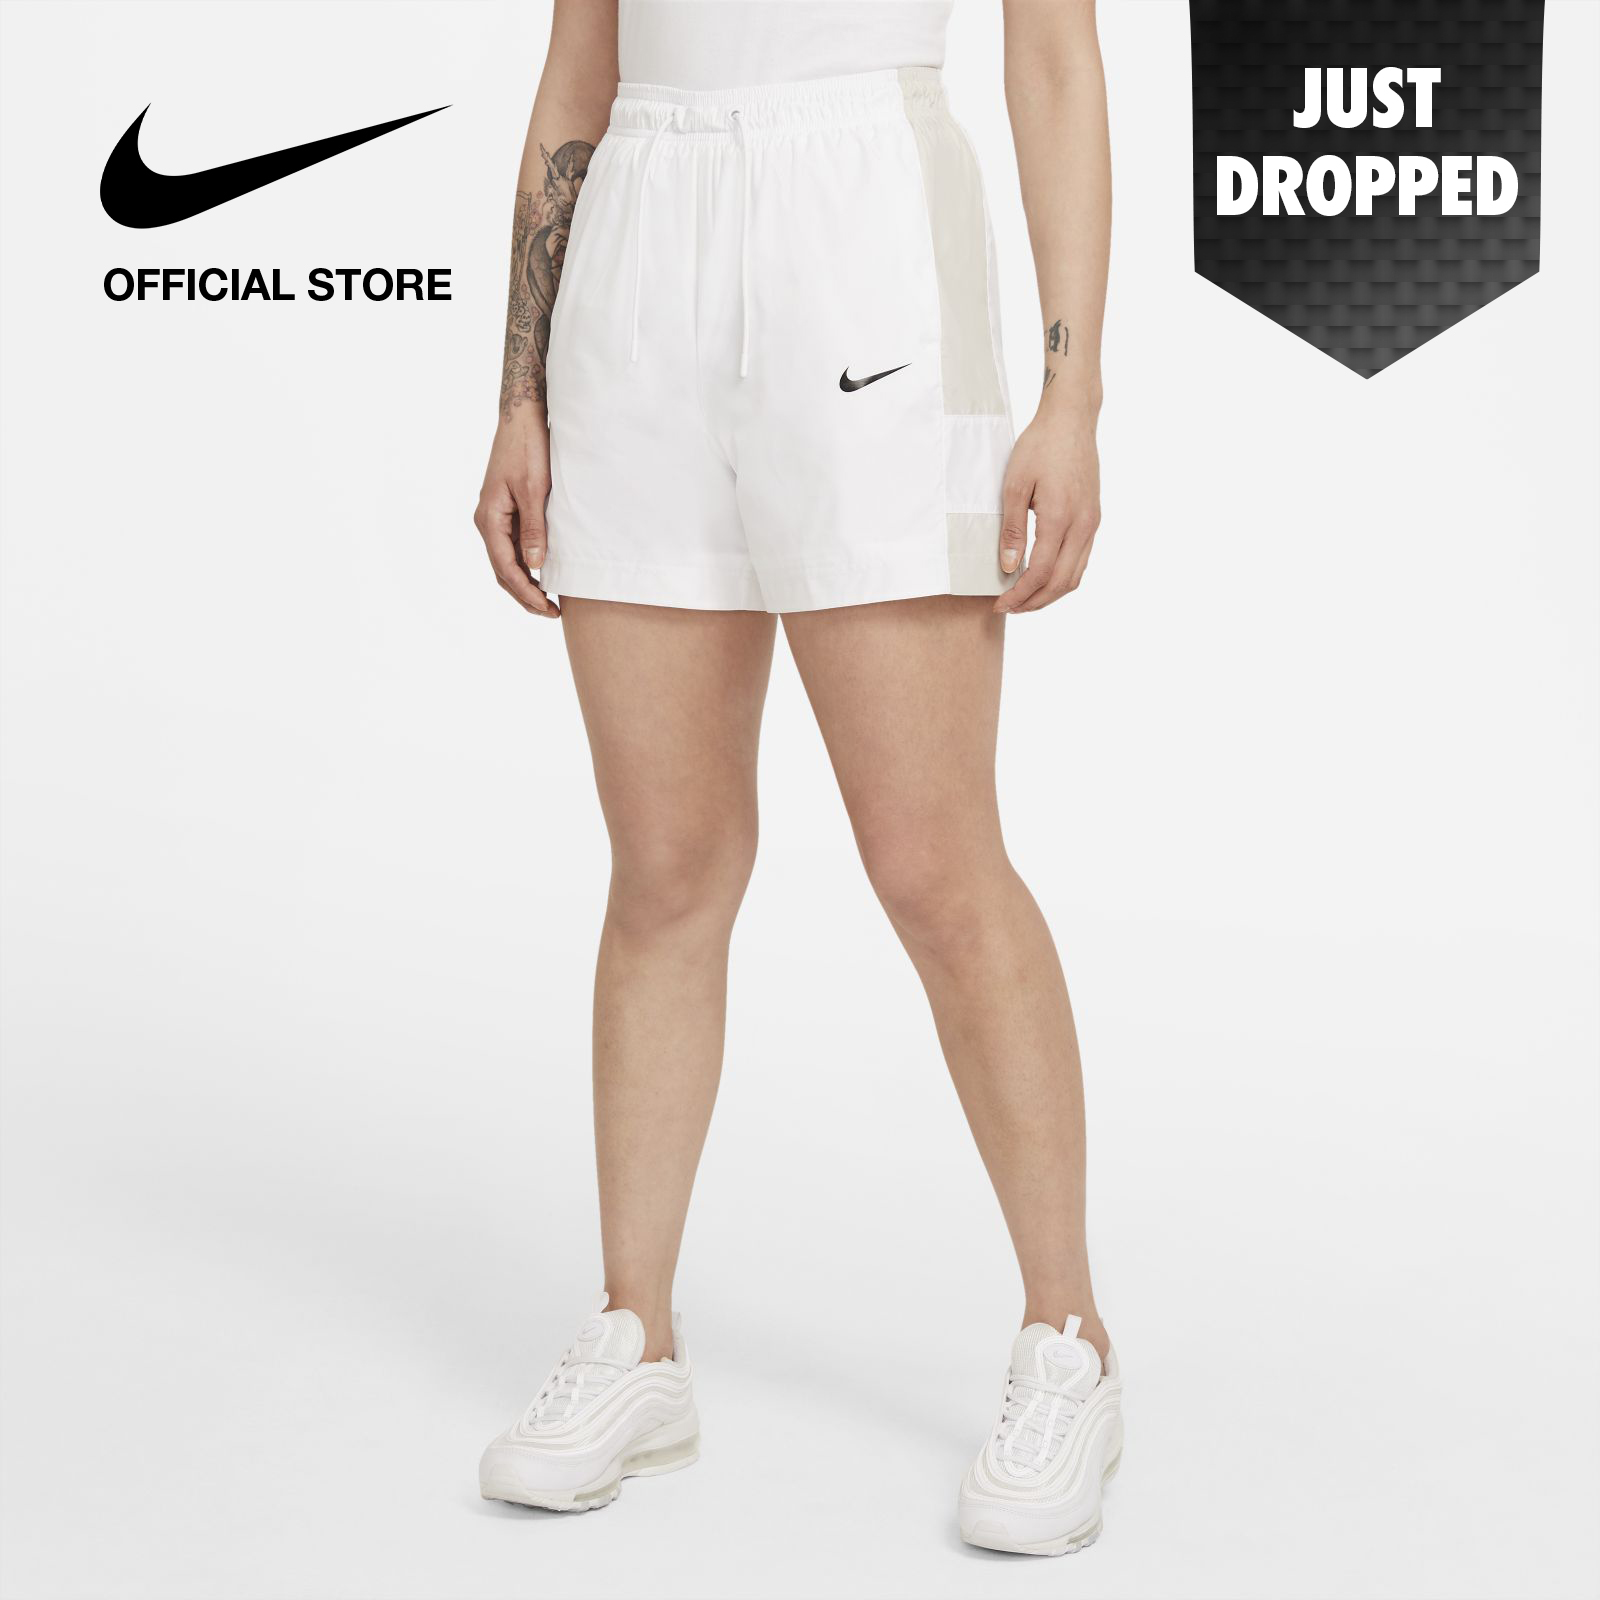 Nike Women's Sportswear Short - White ไนกี้ กางเกงขาสั้นผู้หญิง - สีขาว